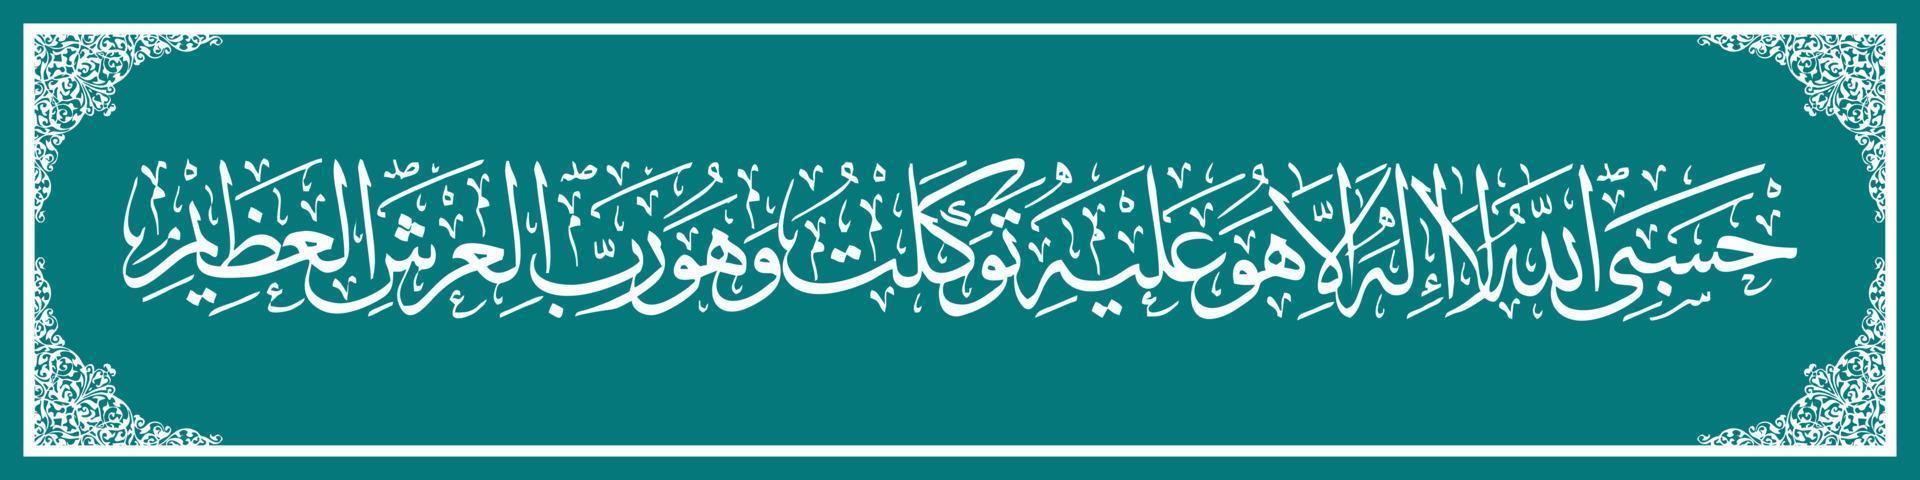 arabicum kalligrafi al quran surah på taubah 129, Översätt så om de sväng bort från de tro, sedan säga muhammed, allah är tillräcklig för mig där är Nej Gud men honom. vektor